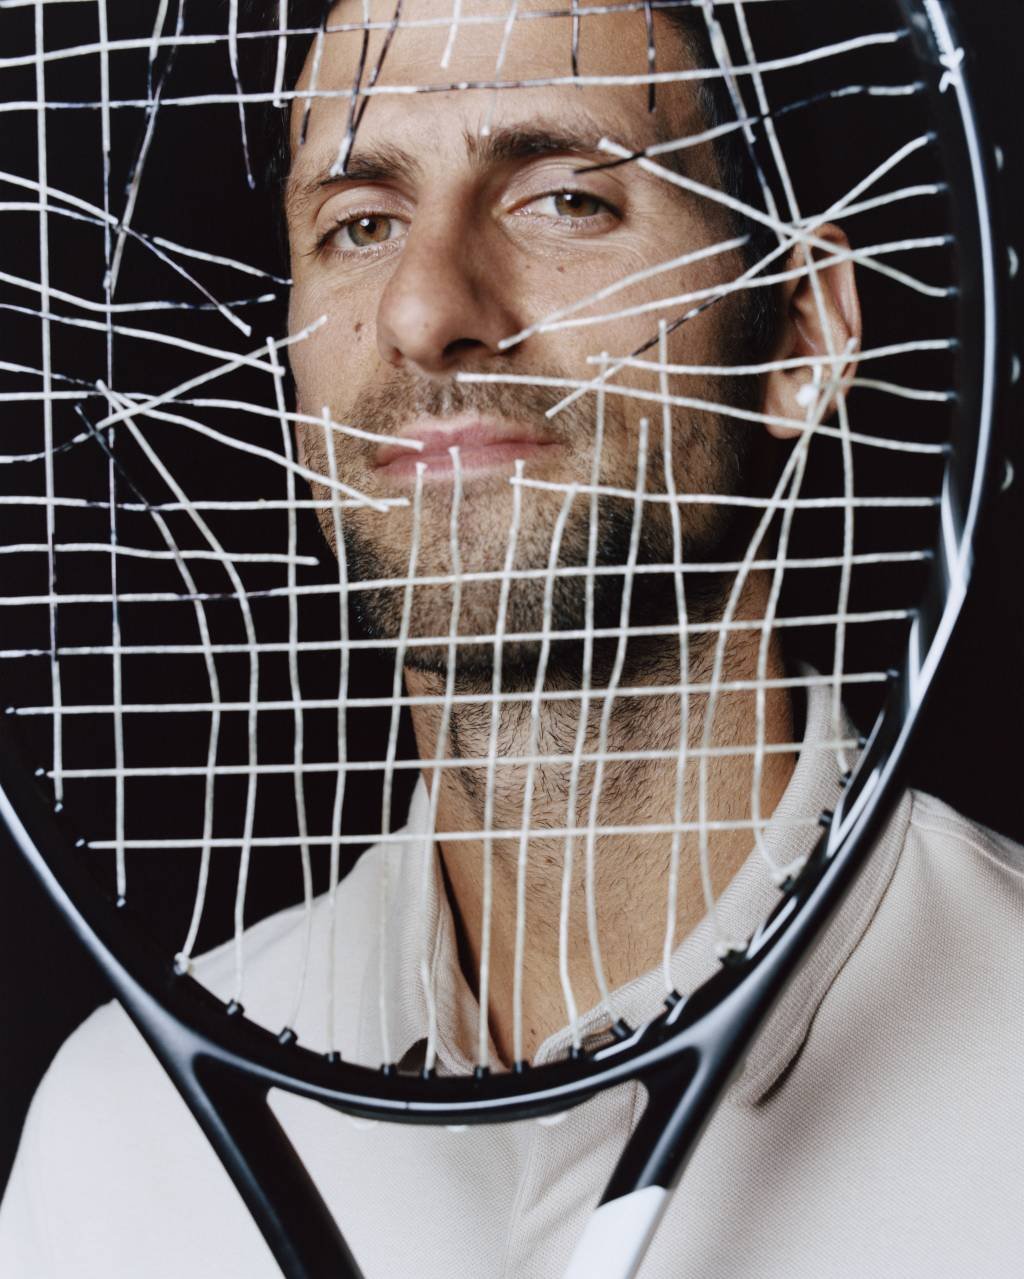 Vinhos, hotéis, biotecnologia: os negócios do tenista (e milionário) Novak Djokovic